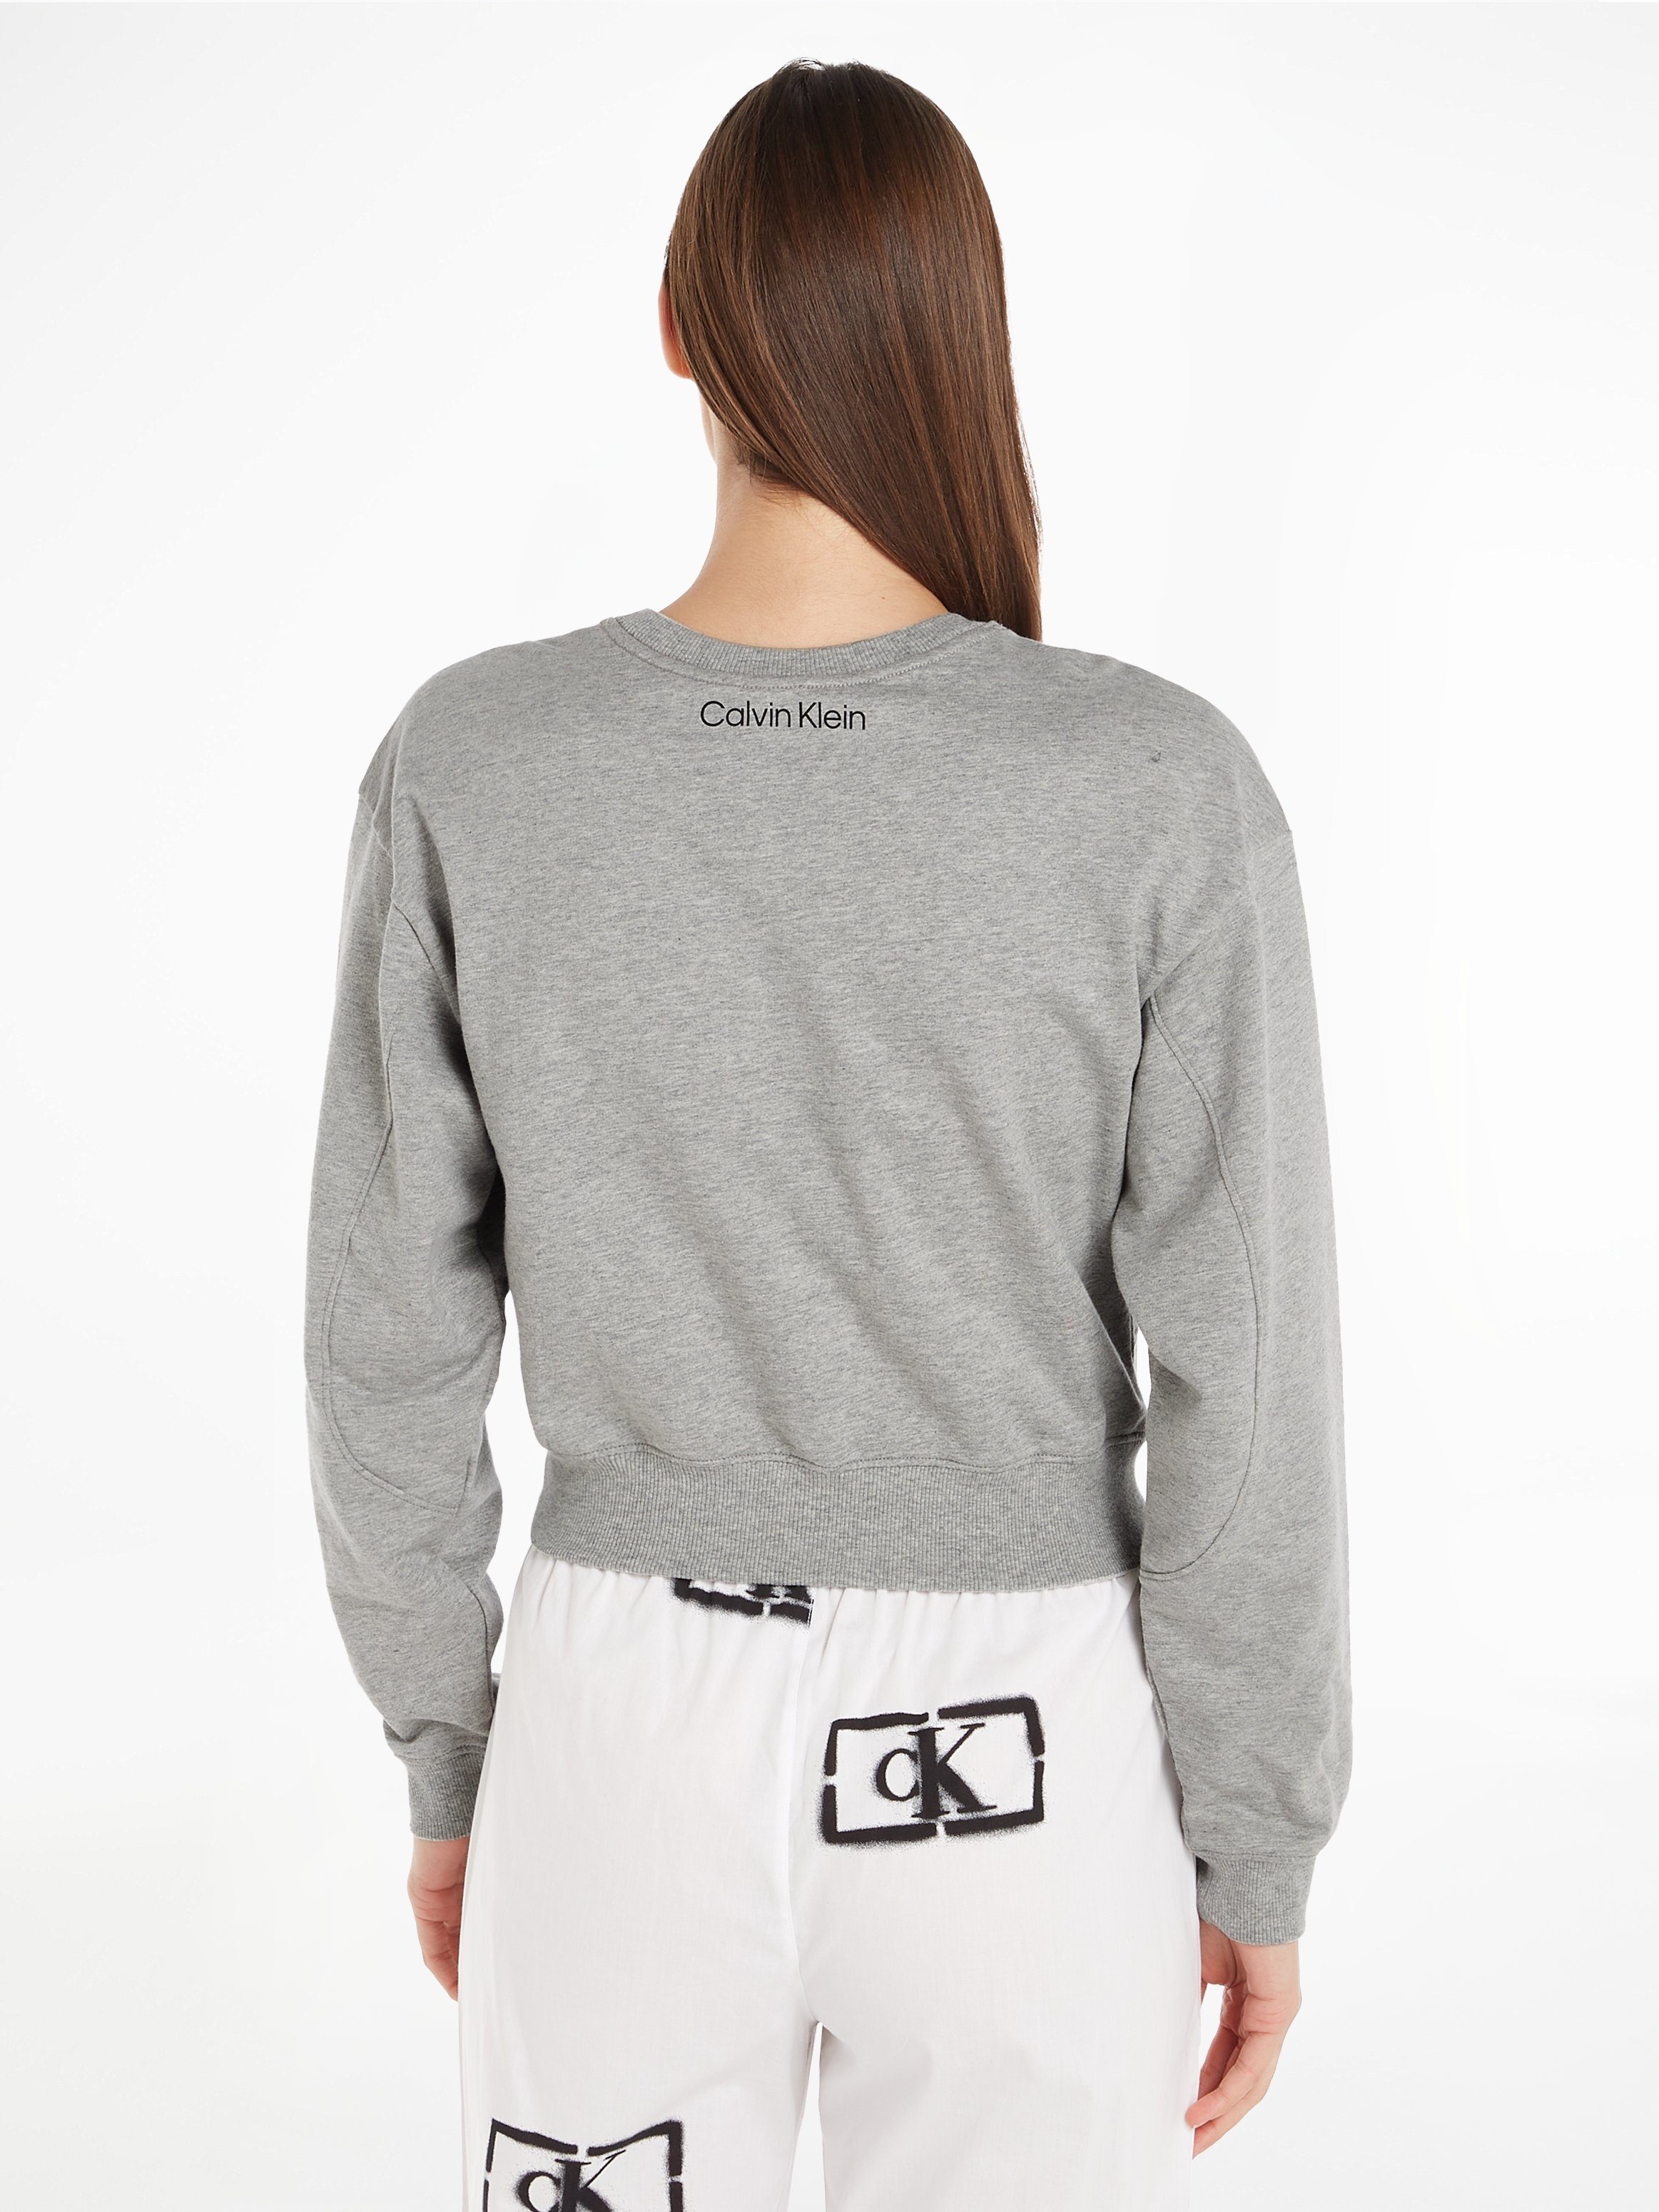 Klein L/S SWEATSHIRT Underwear Calvin im Cropped-Design Sweatshirt